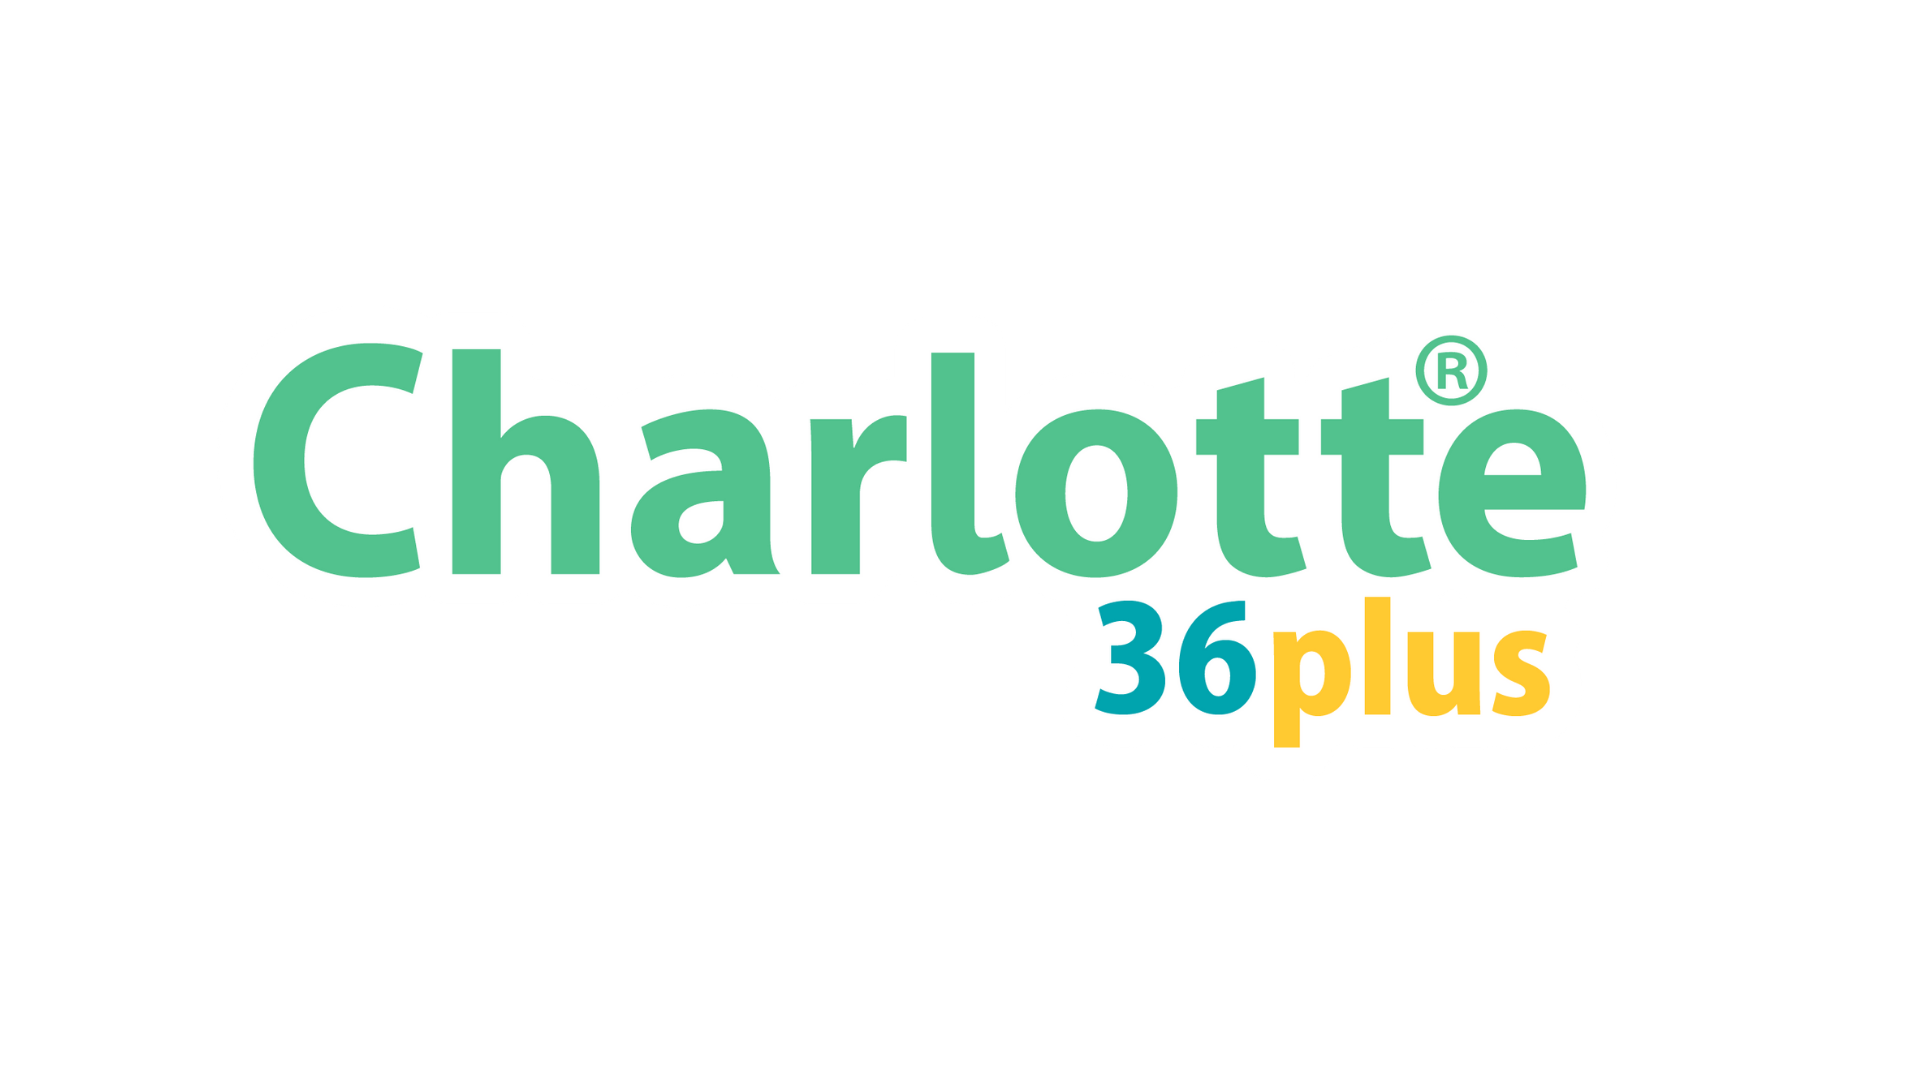 社会保険の電子申請を支援するソリューション「Charlotte」で36協定の電子申請を提供開始